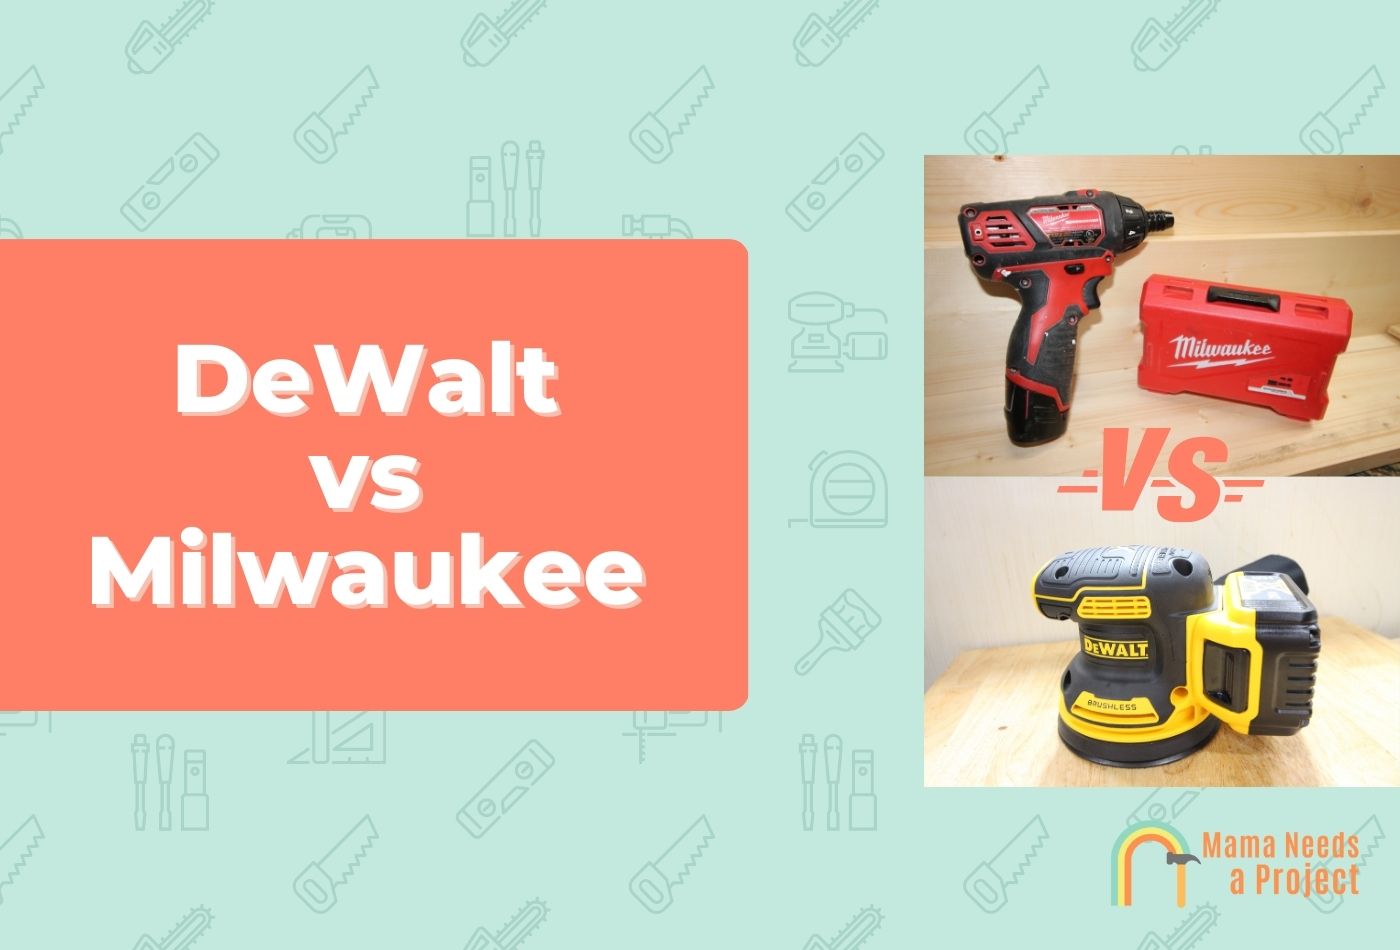 DeWalt vs Milwaukee